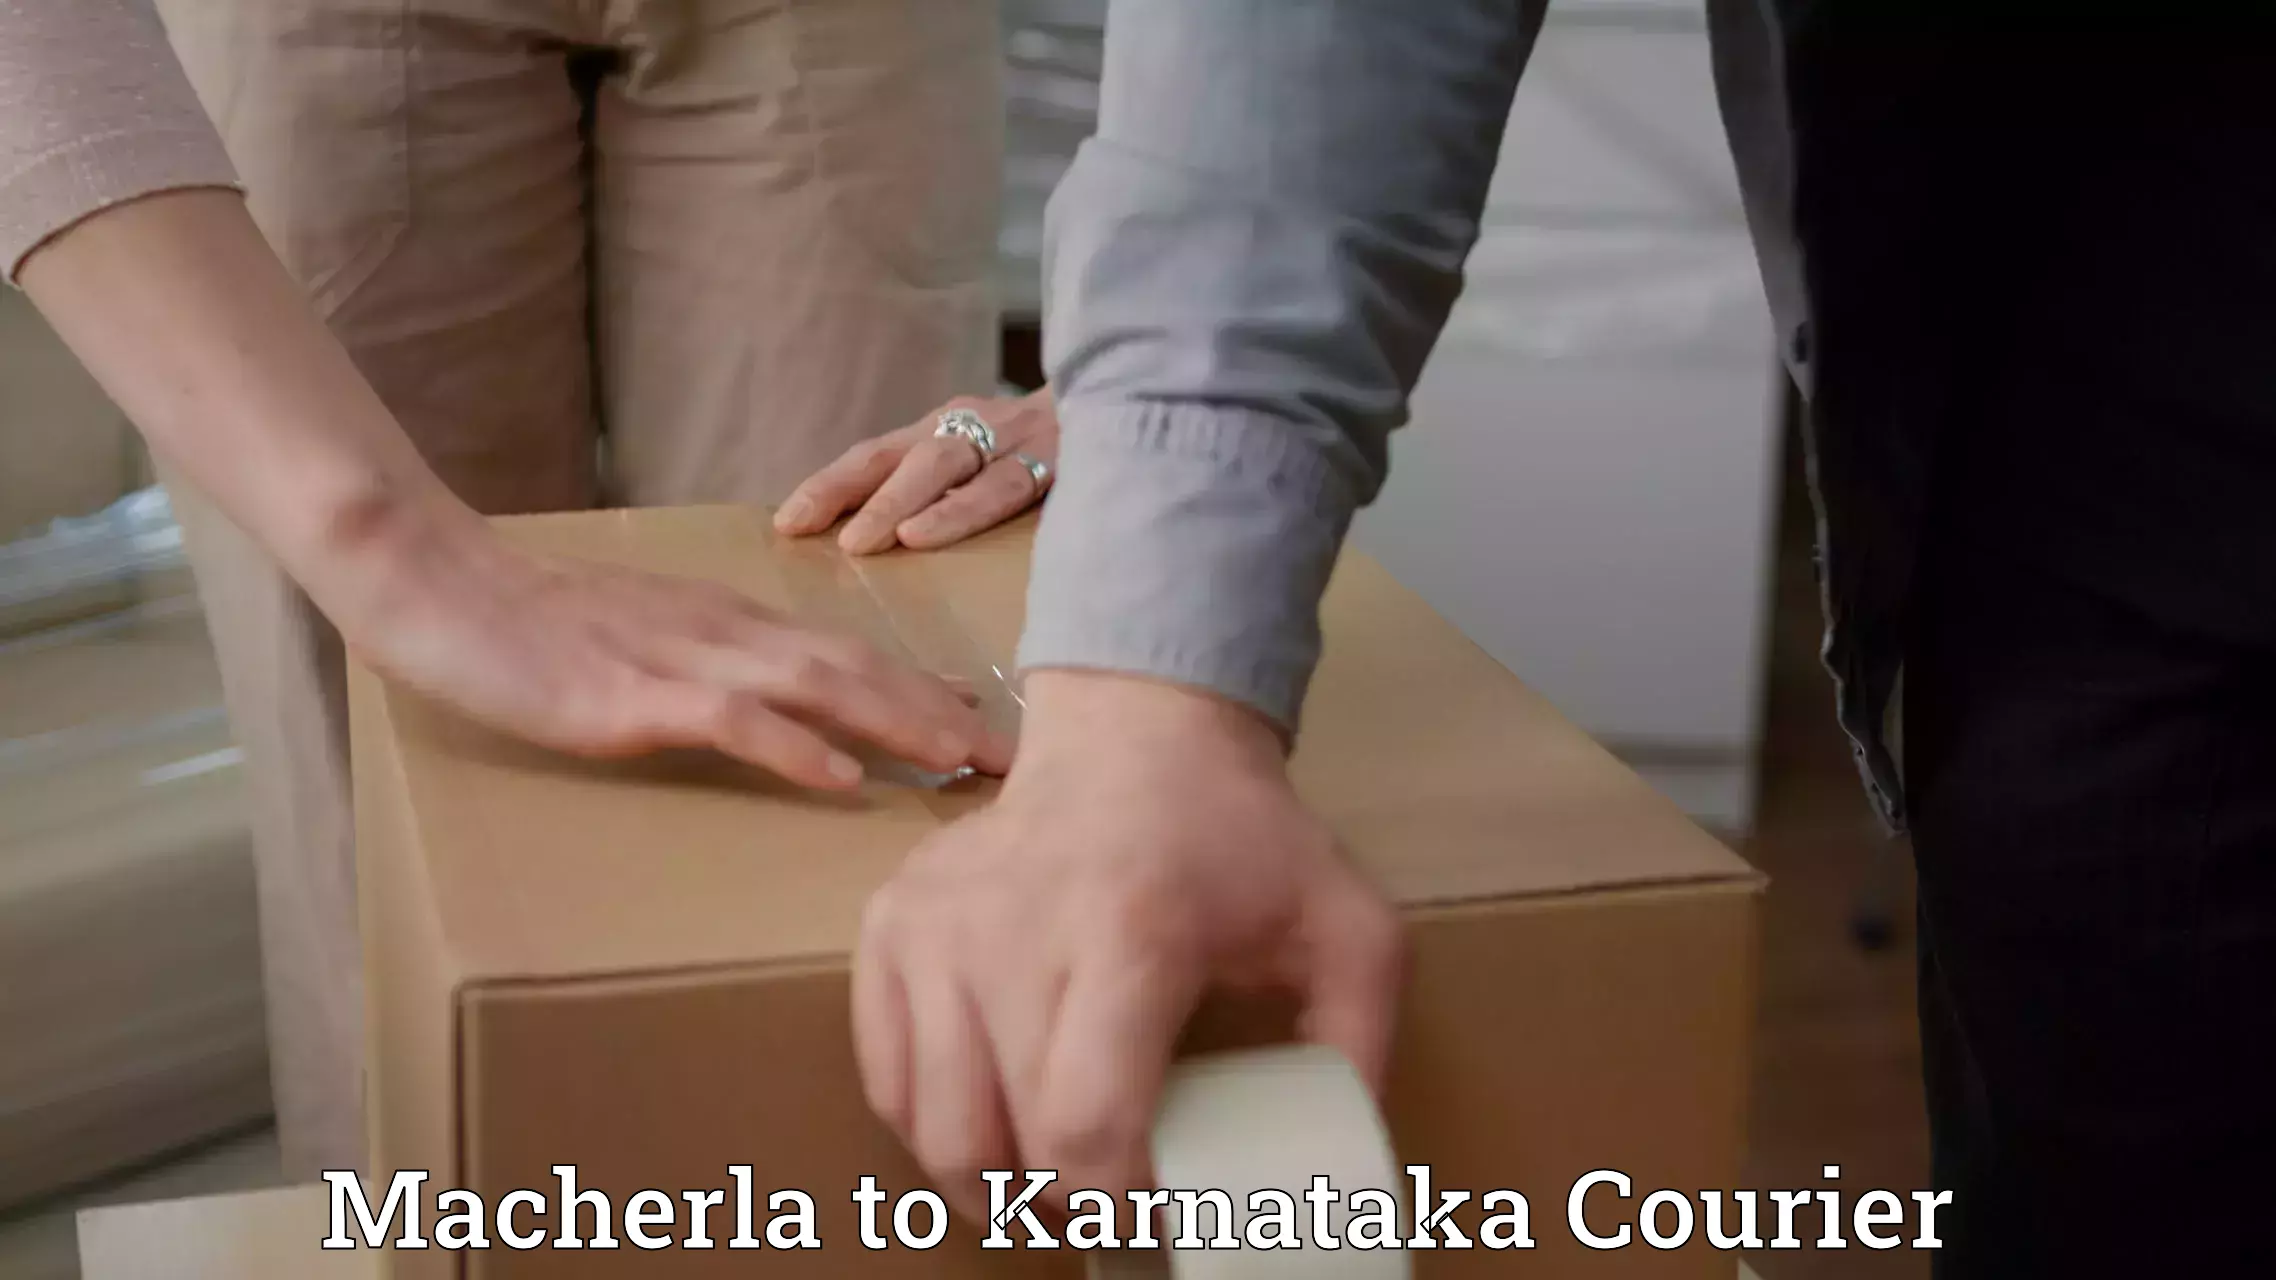 24/7 courier service in Macherla to Karnataka